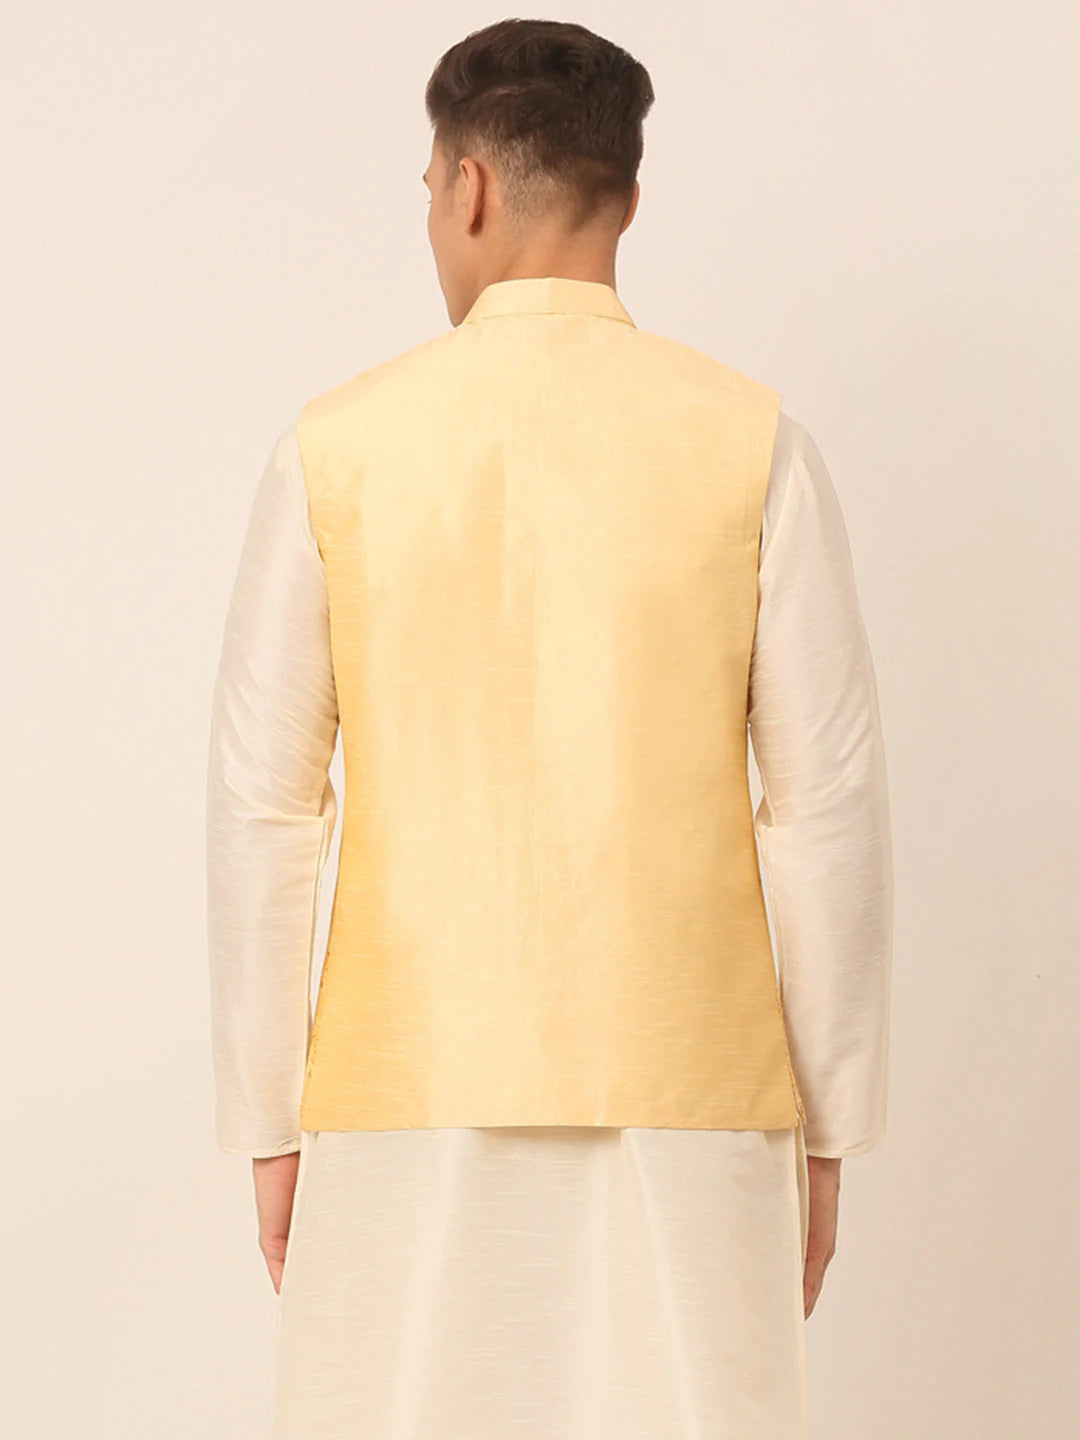 Men Golden Embroidered Woven Nehru Jackets ( JOWC 4044 Golden )